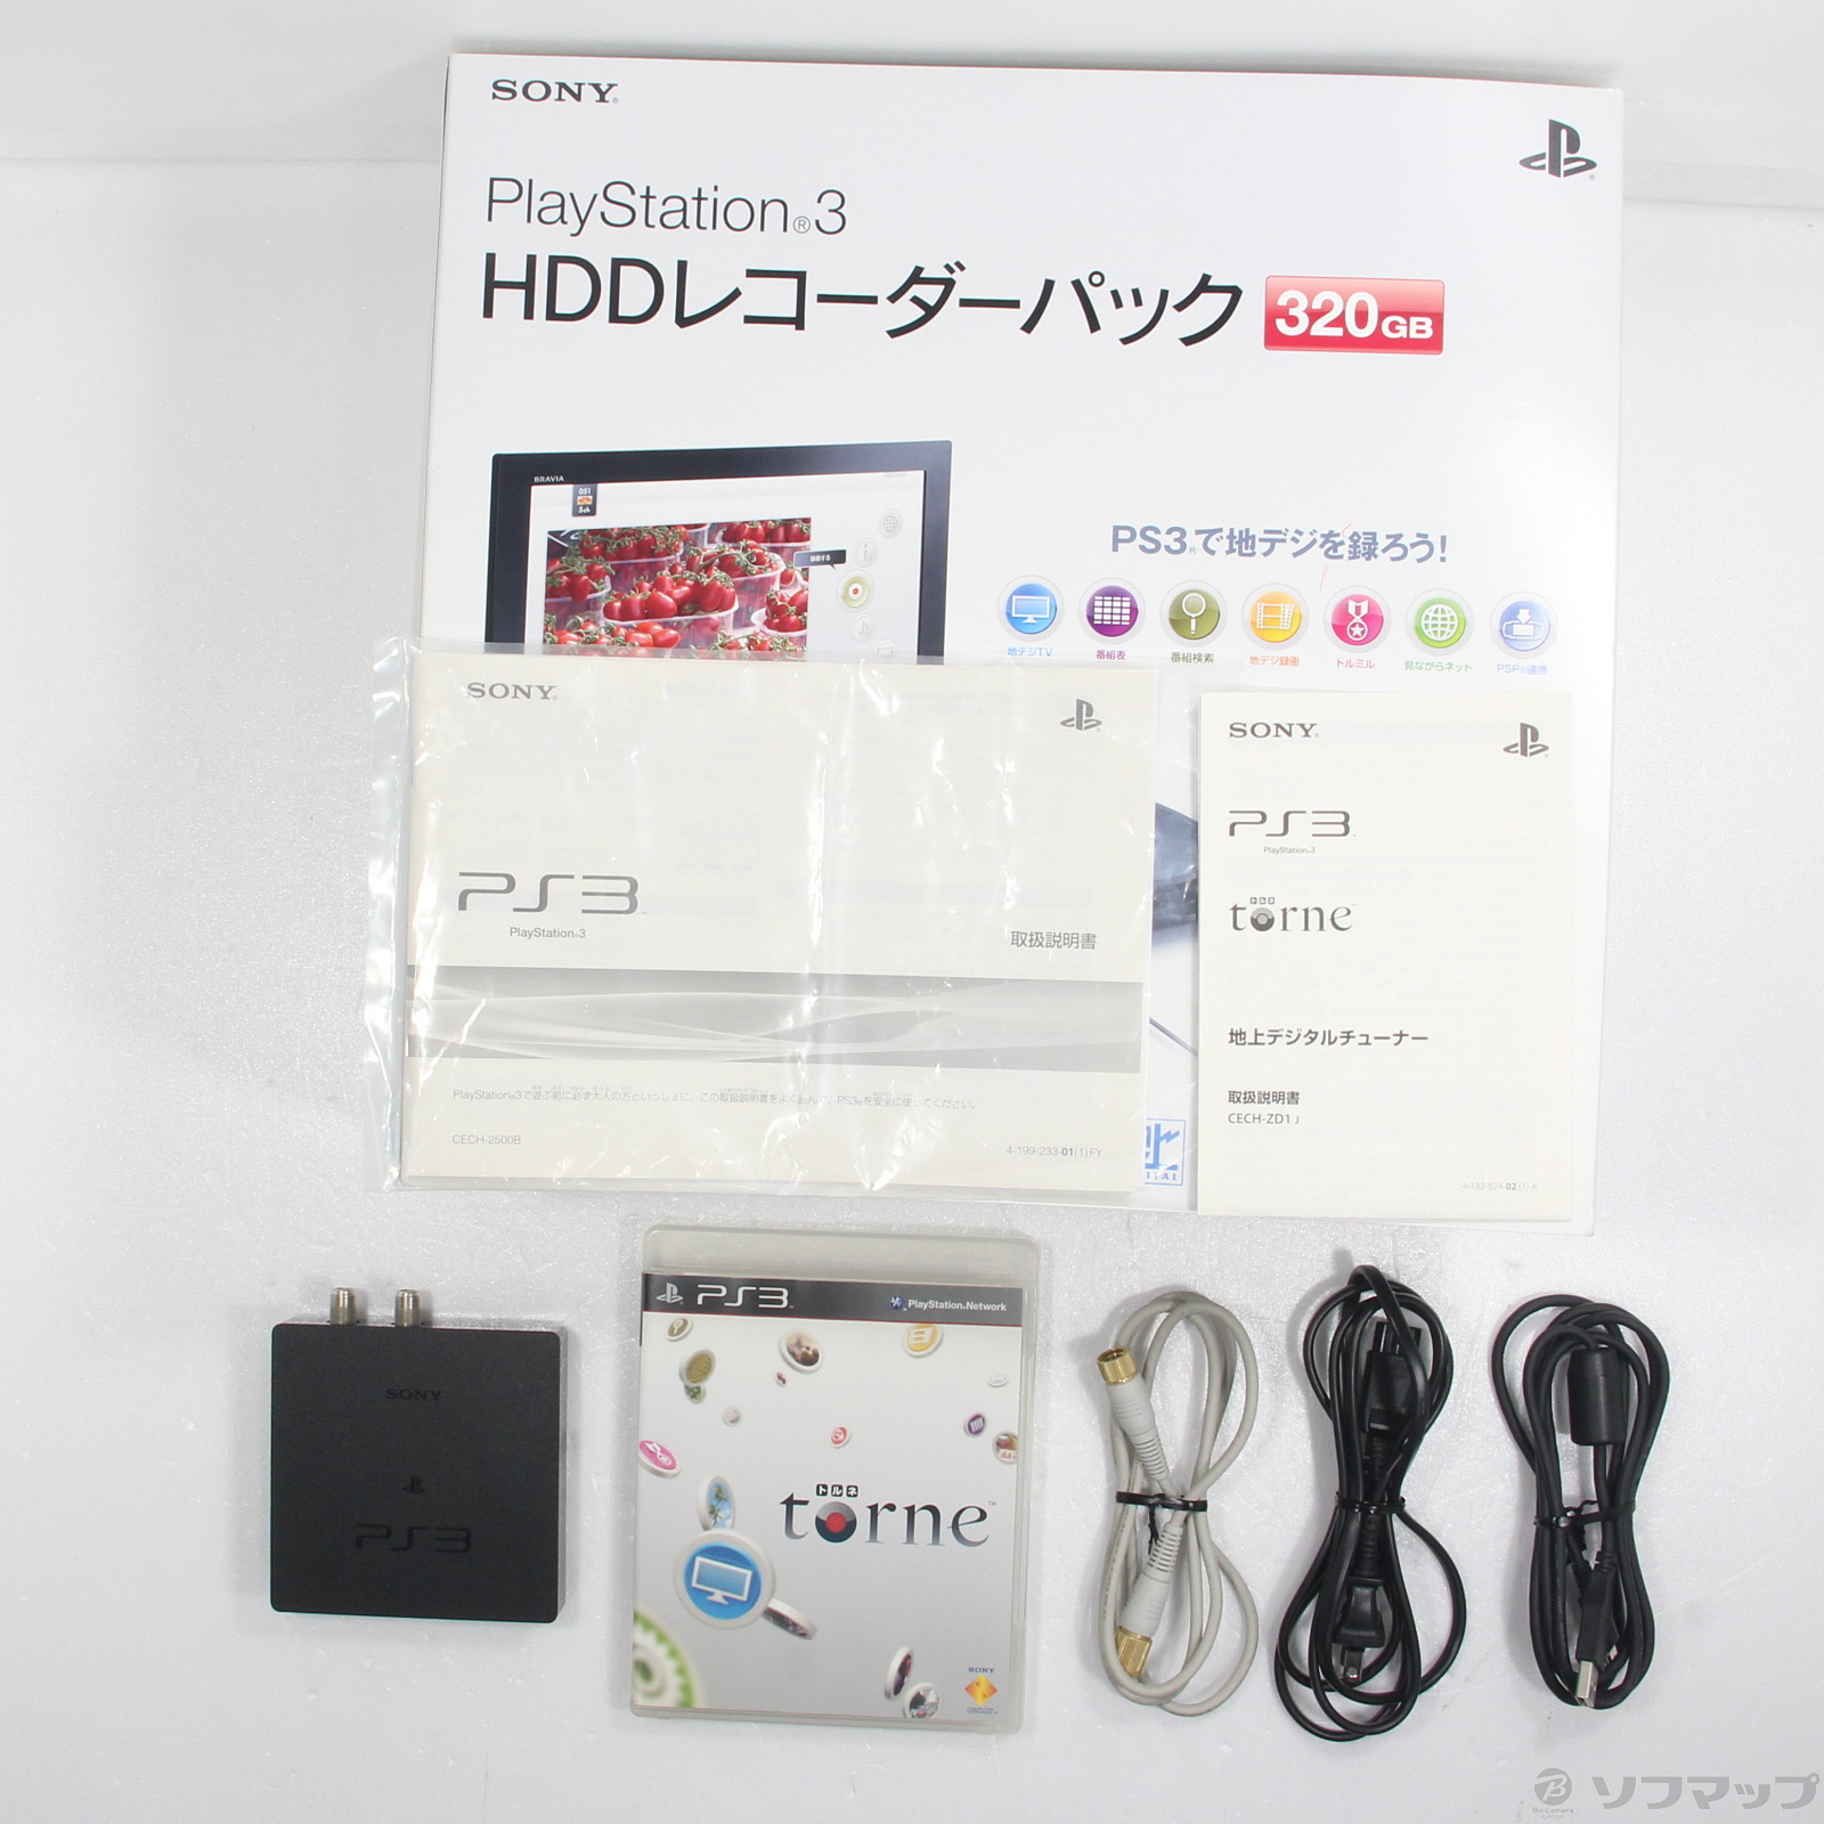 中古品〕 PlayStation 3 HDDレコーダーパック 320GB チャコール